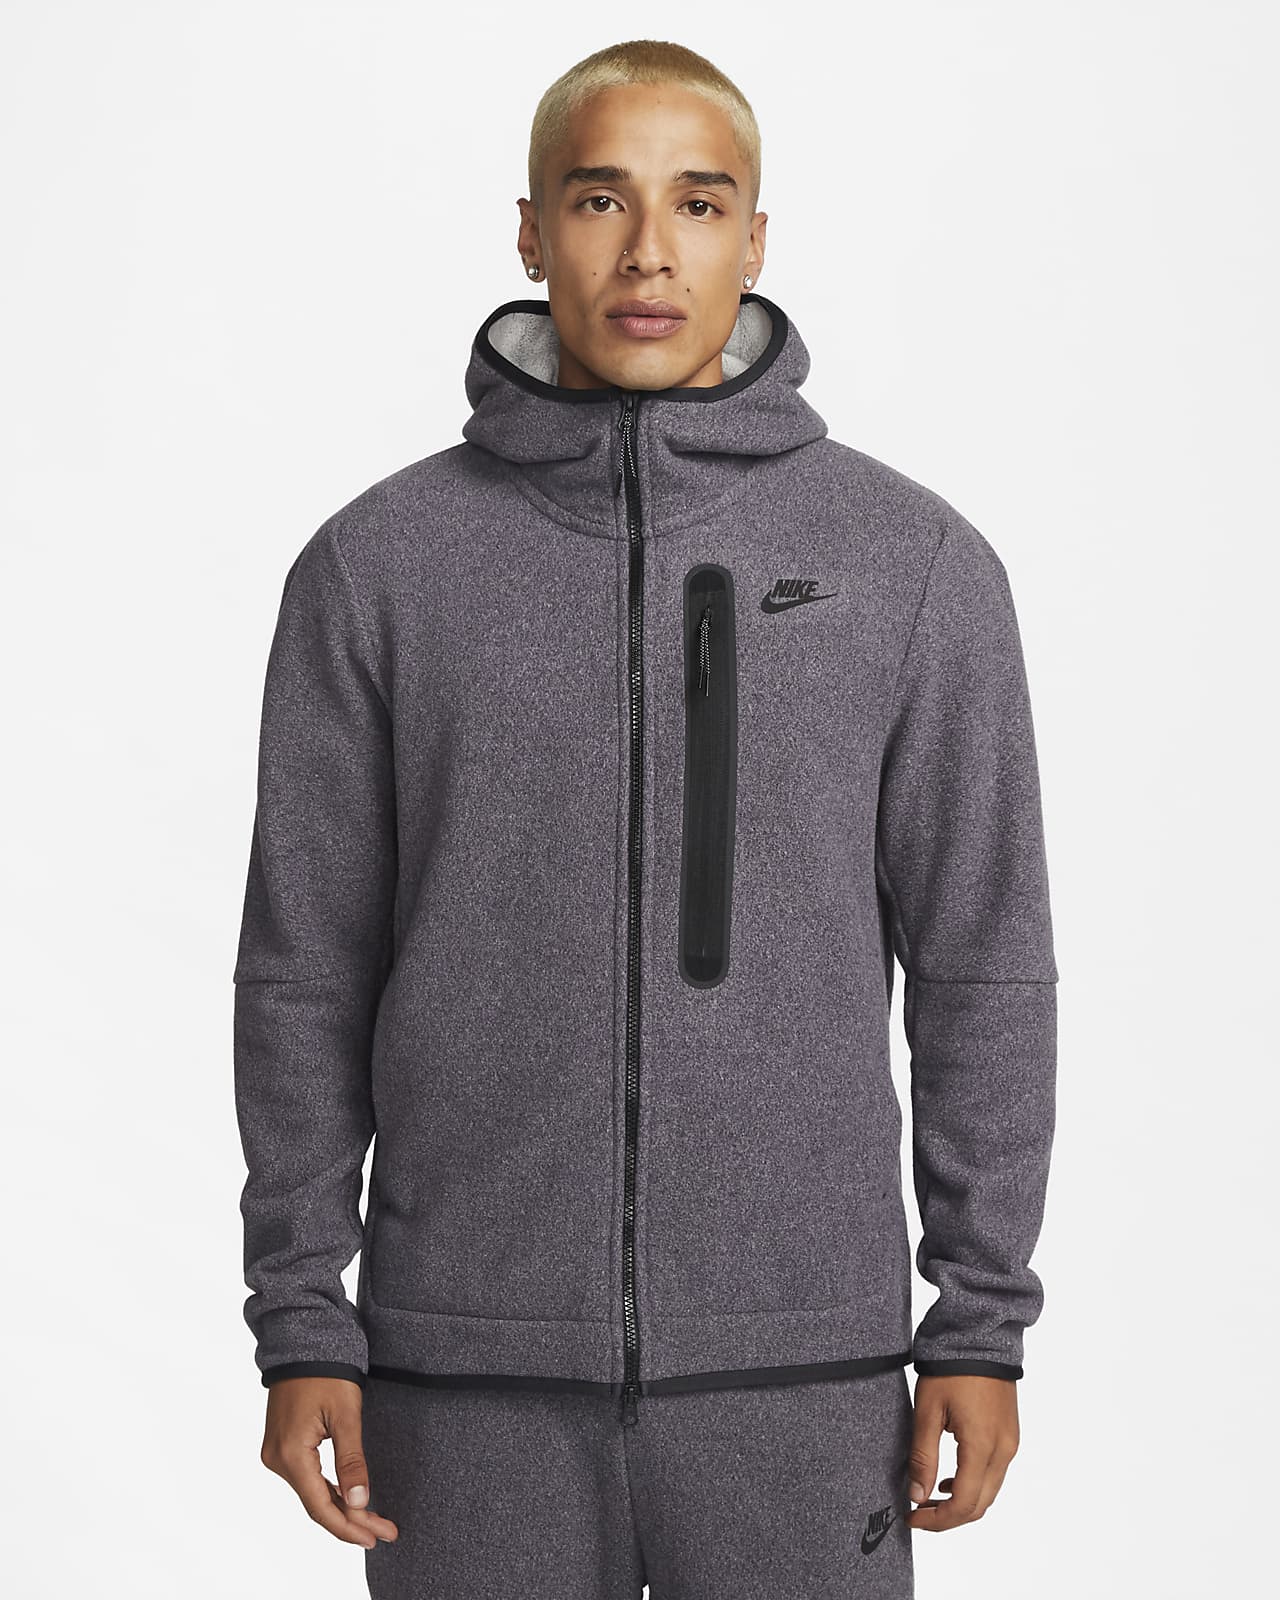 hengel Dapperheid Tijdens ~ Nike Sportswear Tech Fleece Men's Full-Zip Winterized Hoodie. Nike.com